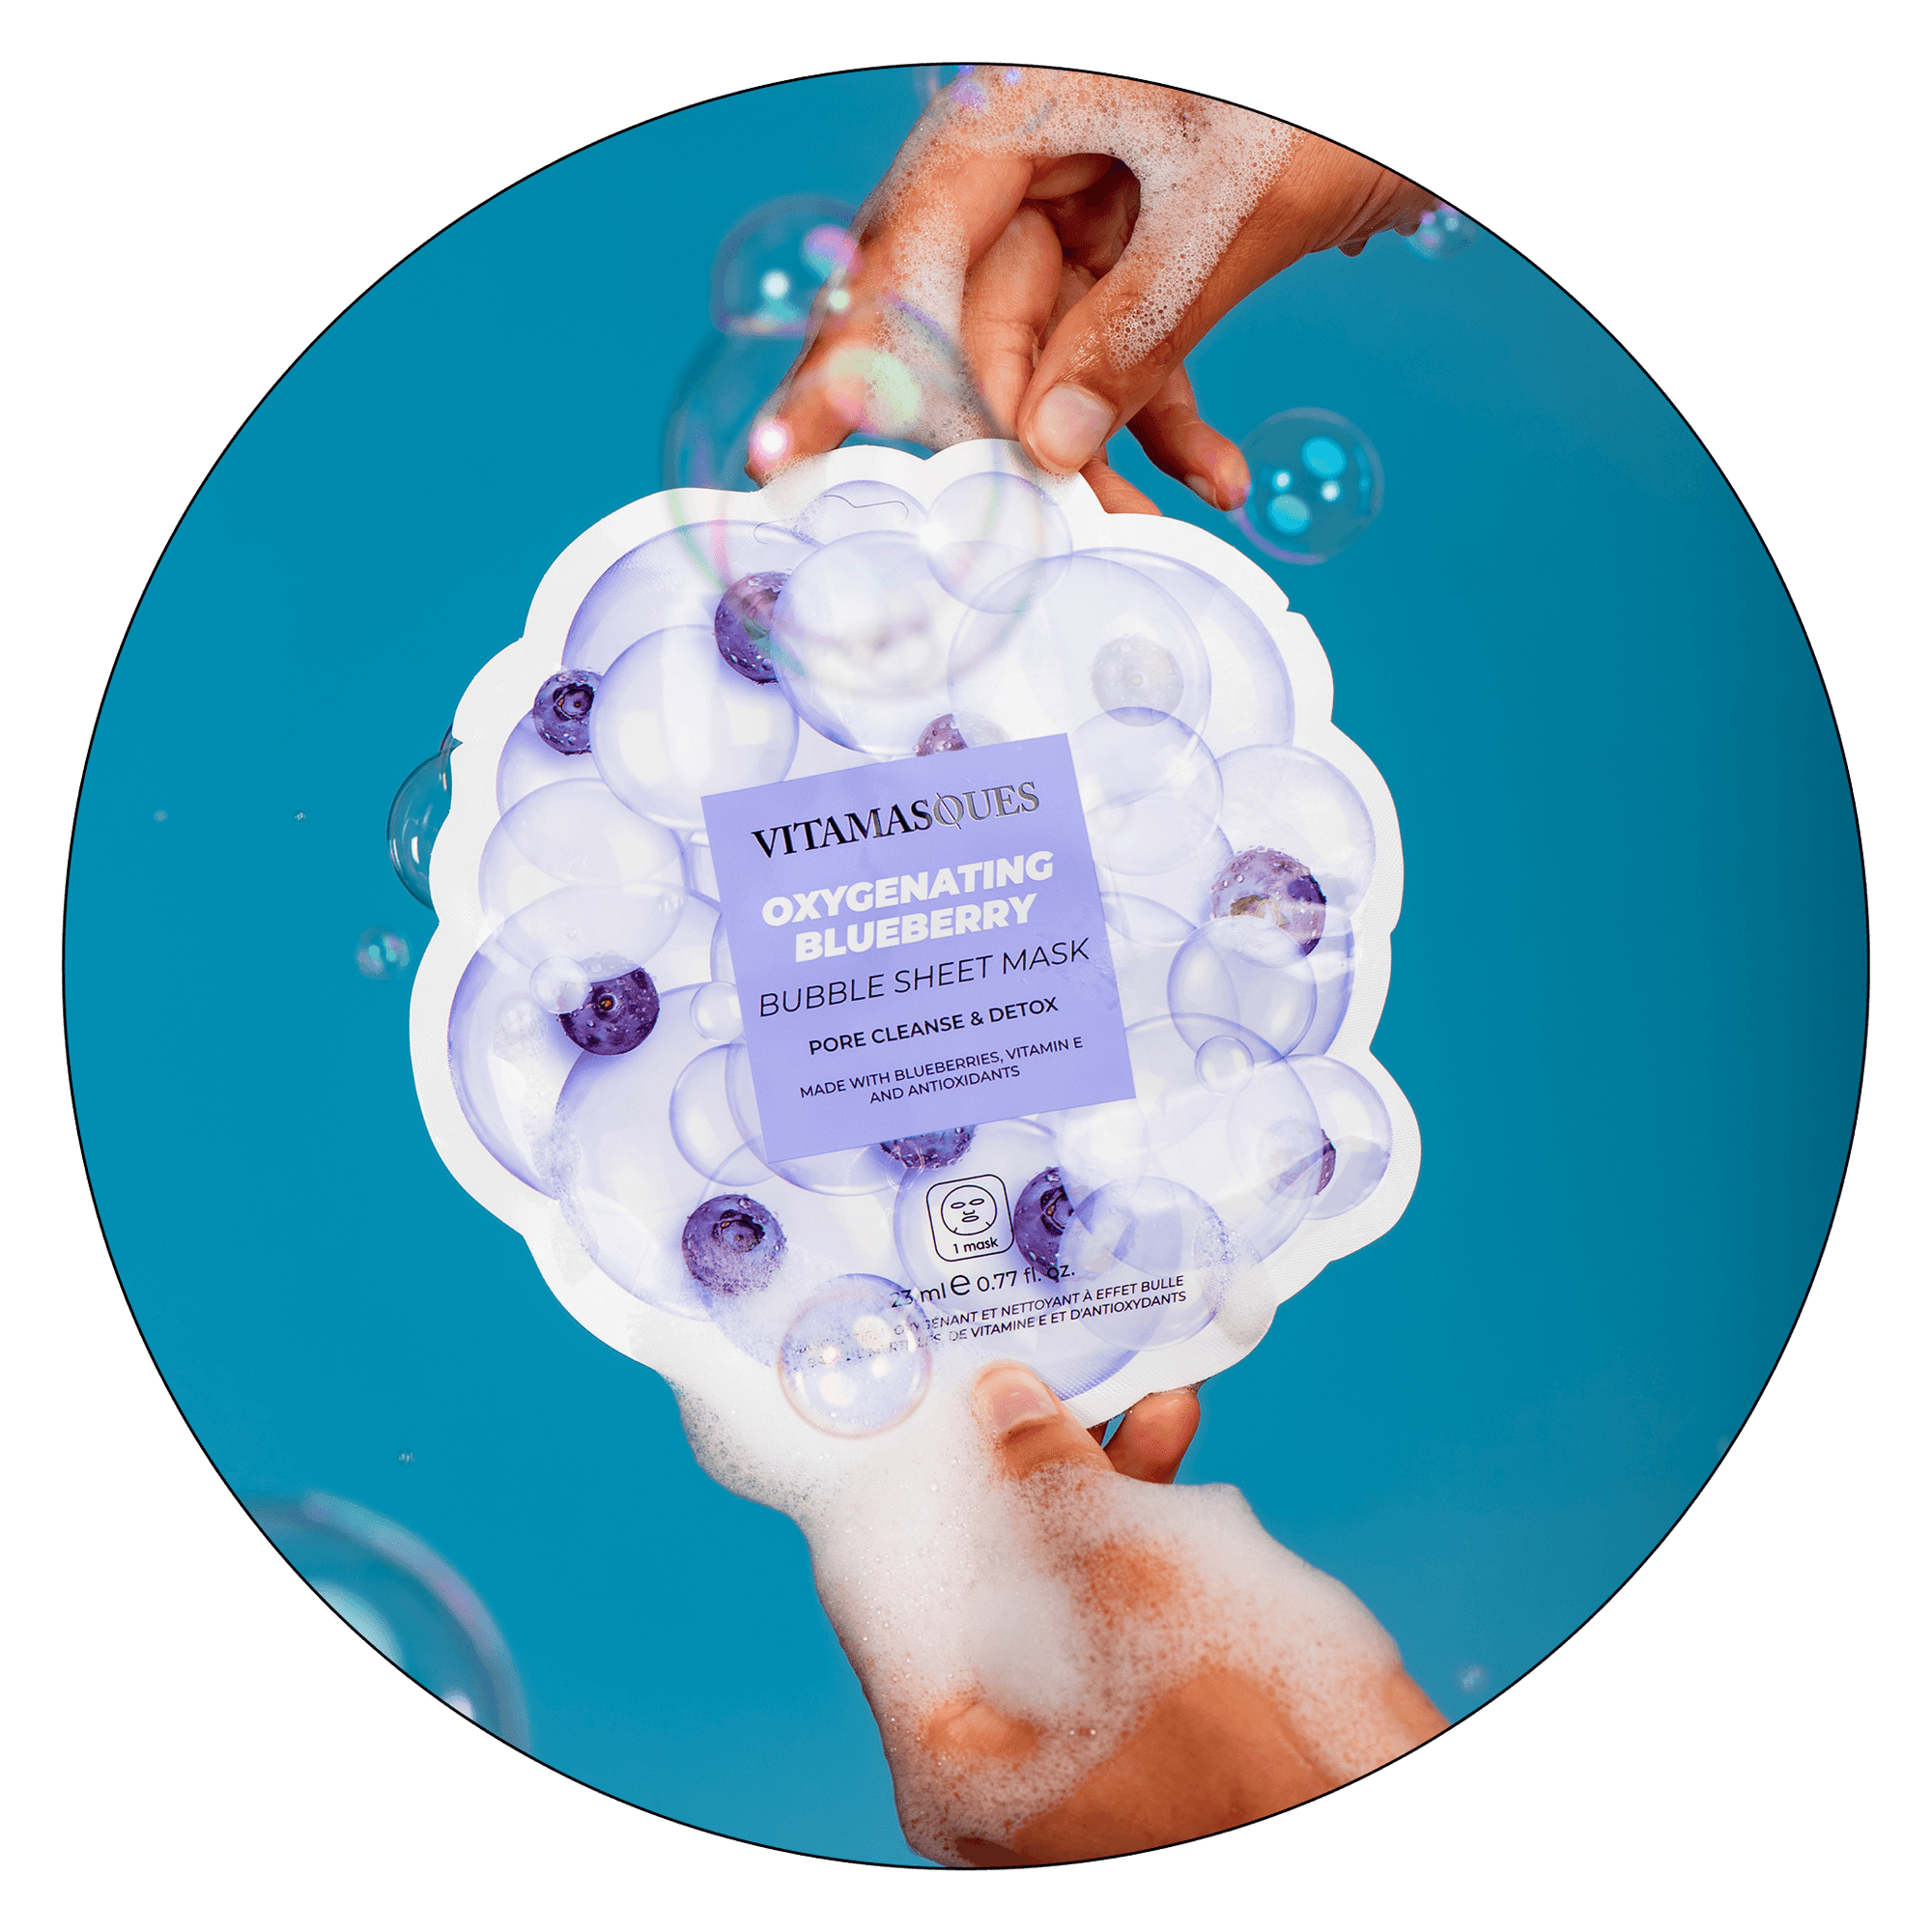 Oxygenating Blueberry Bubble Sheet Mask - Vitamasques